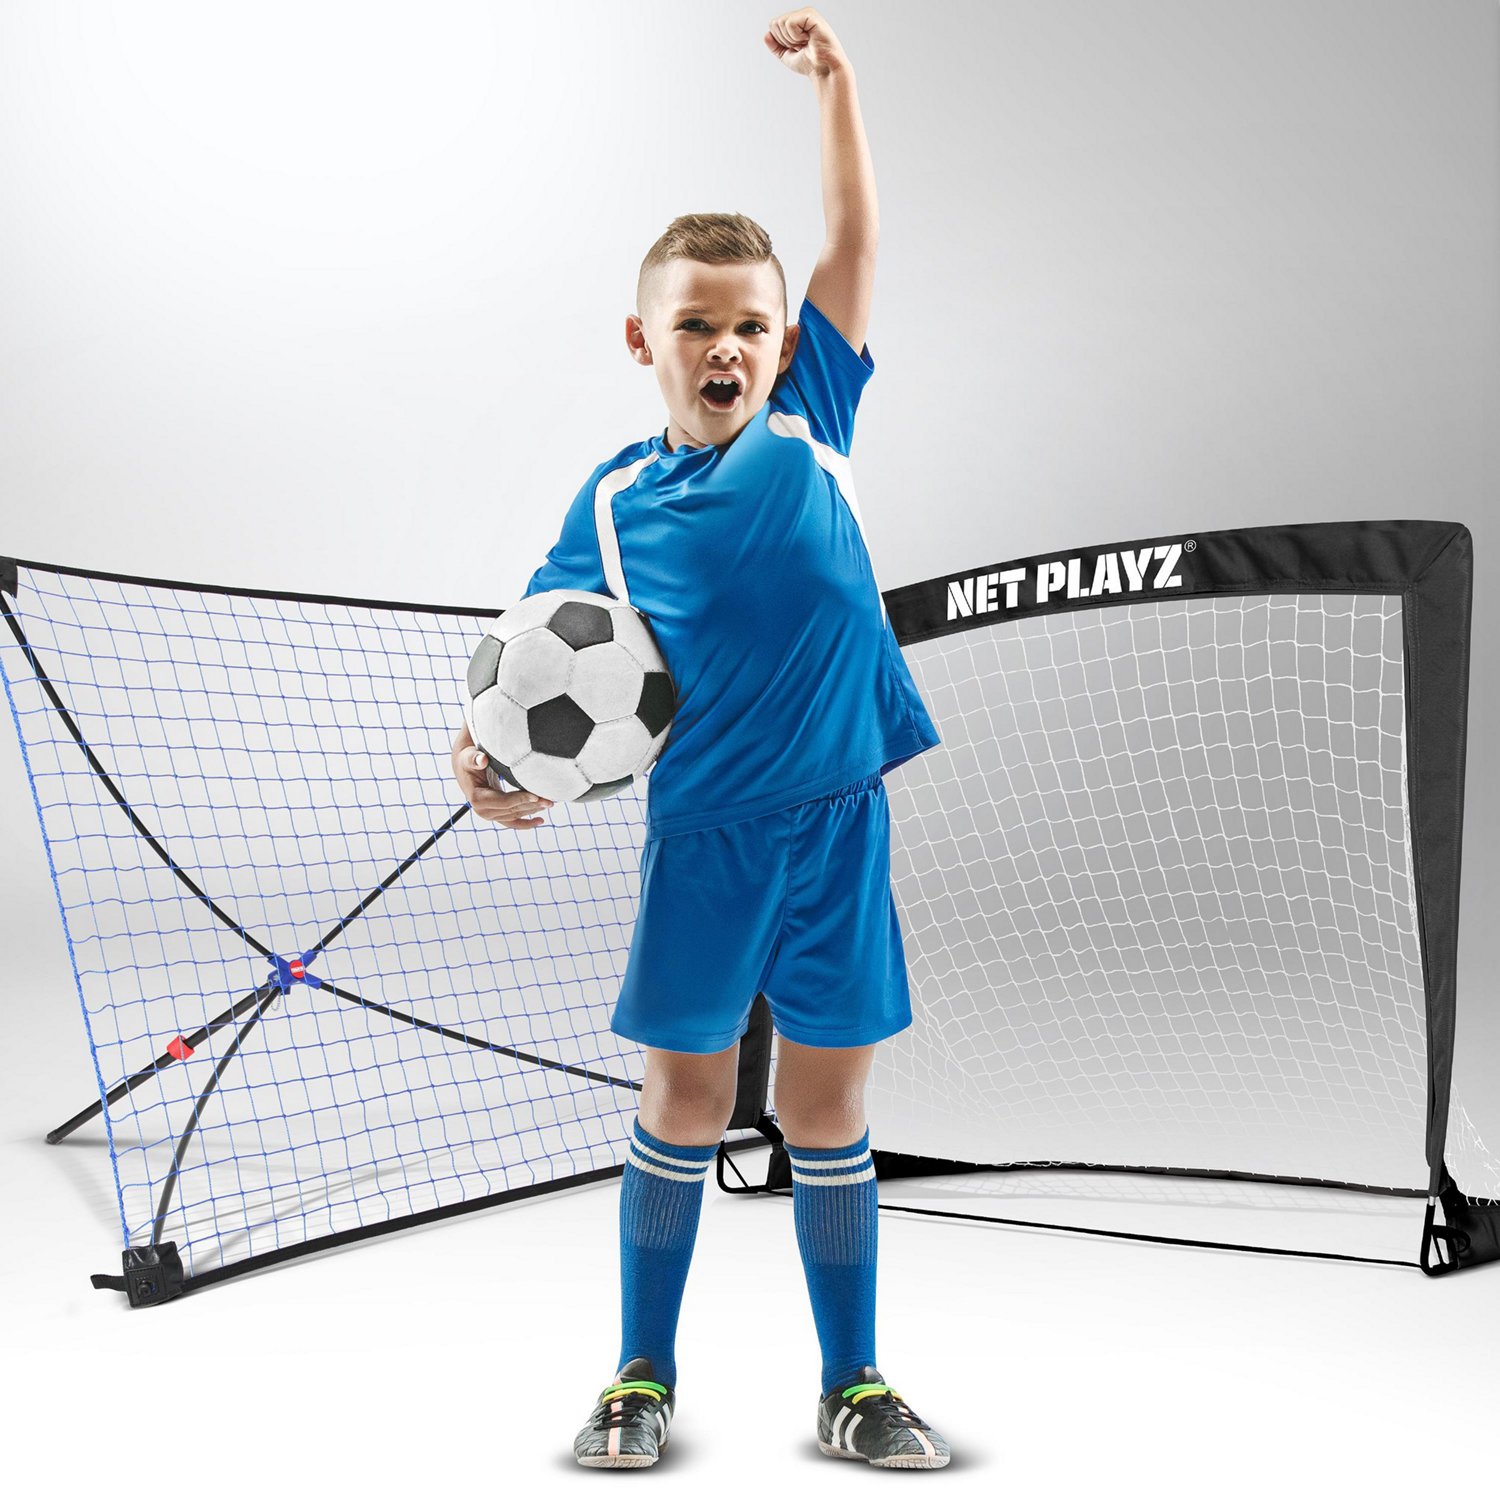 NET PLAYZ Soccer goals Soccer Net - Kids Pop-up Football goals